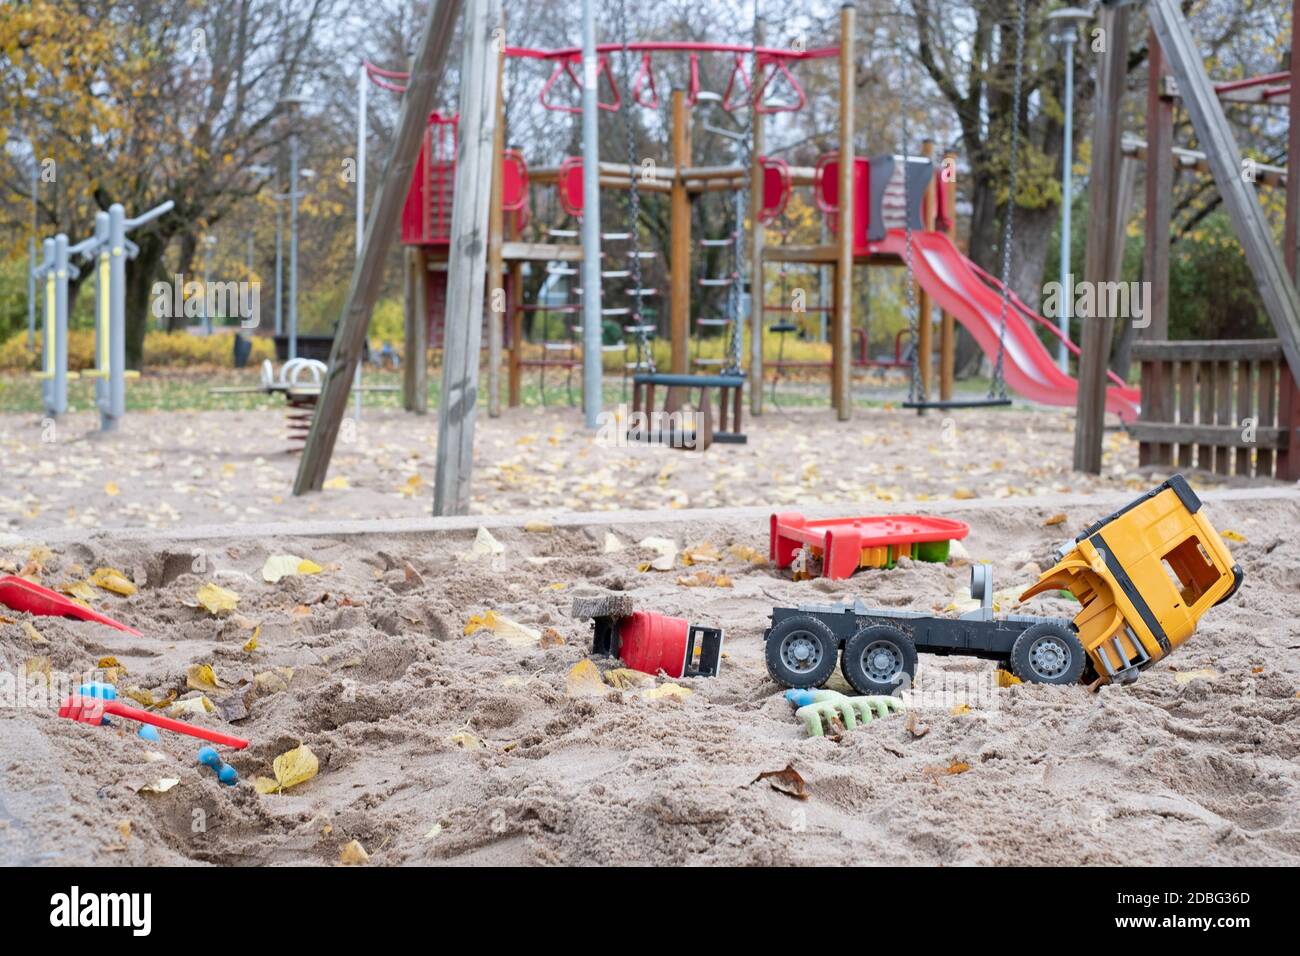 Parco giochi desertato in un parco cittadino con giocattoli per bambini rotti durante la chiusura COVID-19. Restrizioni di allontanamento sociale del virus Corona. Parcheggio vuoto. Foto Stock